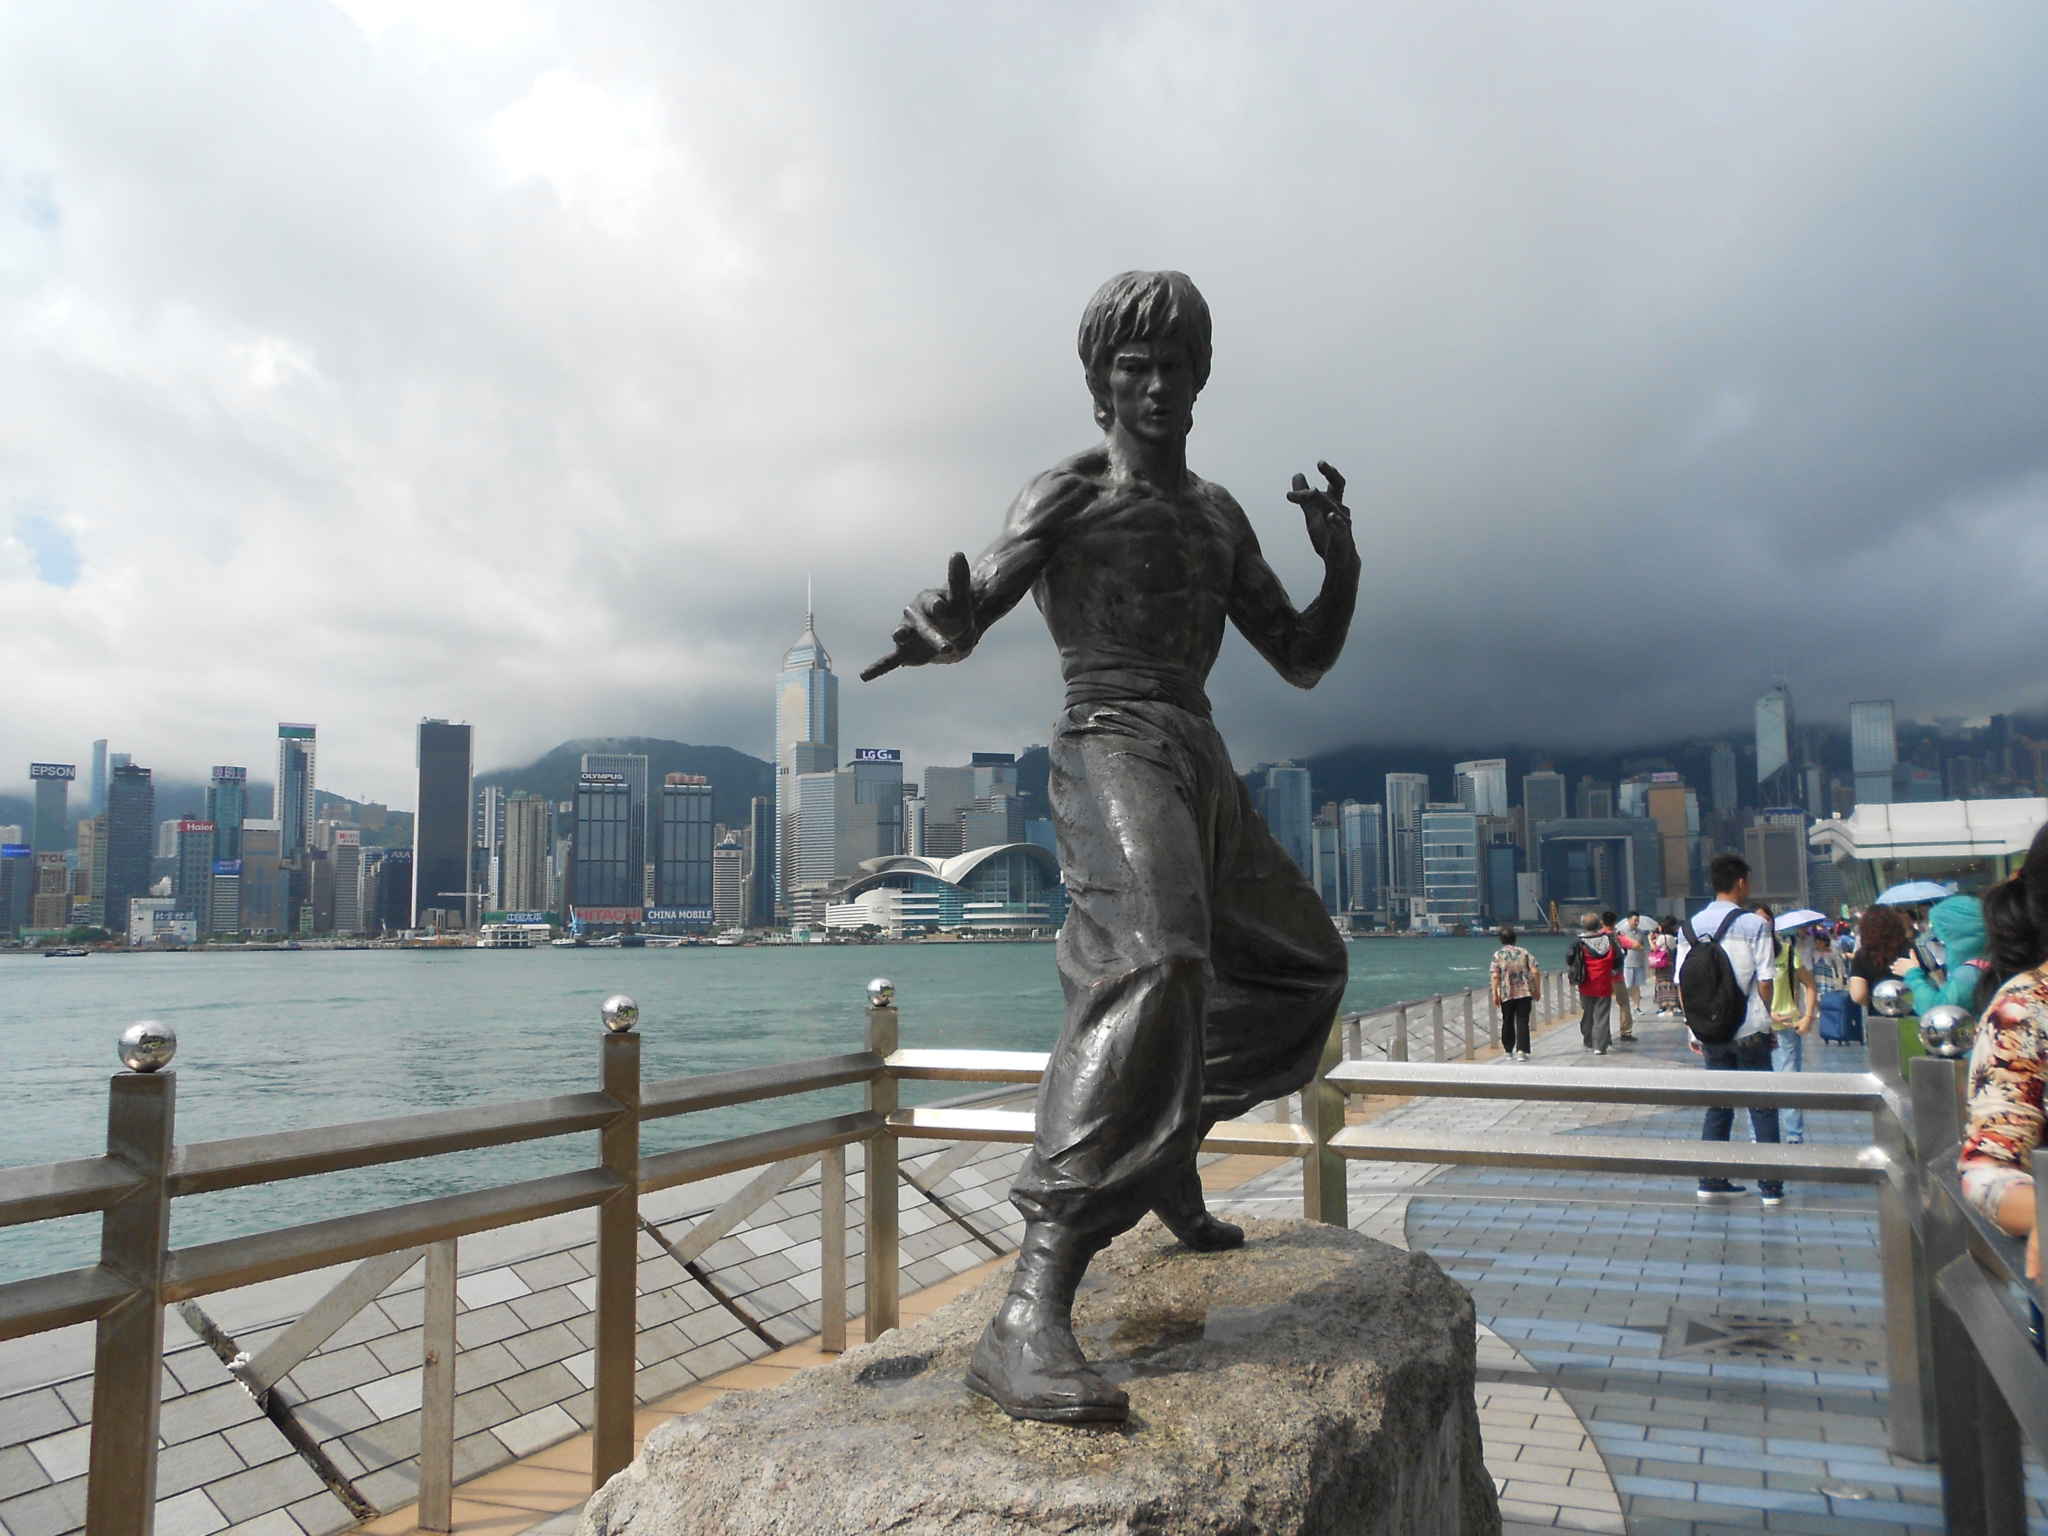 图片素材 : 纪念碑, 雕像, 亚洲, 香港, 雕塑, 艺术, 大街, 传奇的, 中国, 名人, 演员, 布鲁斯, habour, 功夫 ...